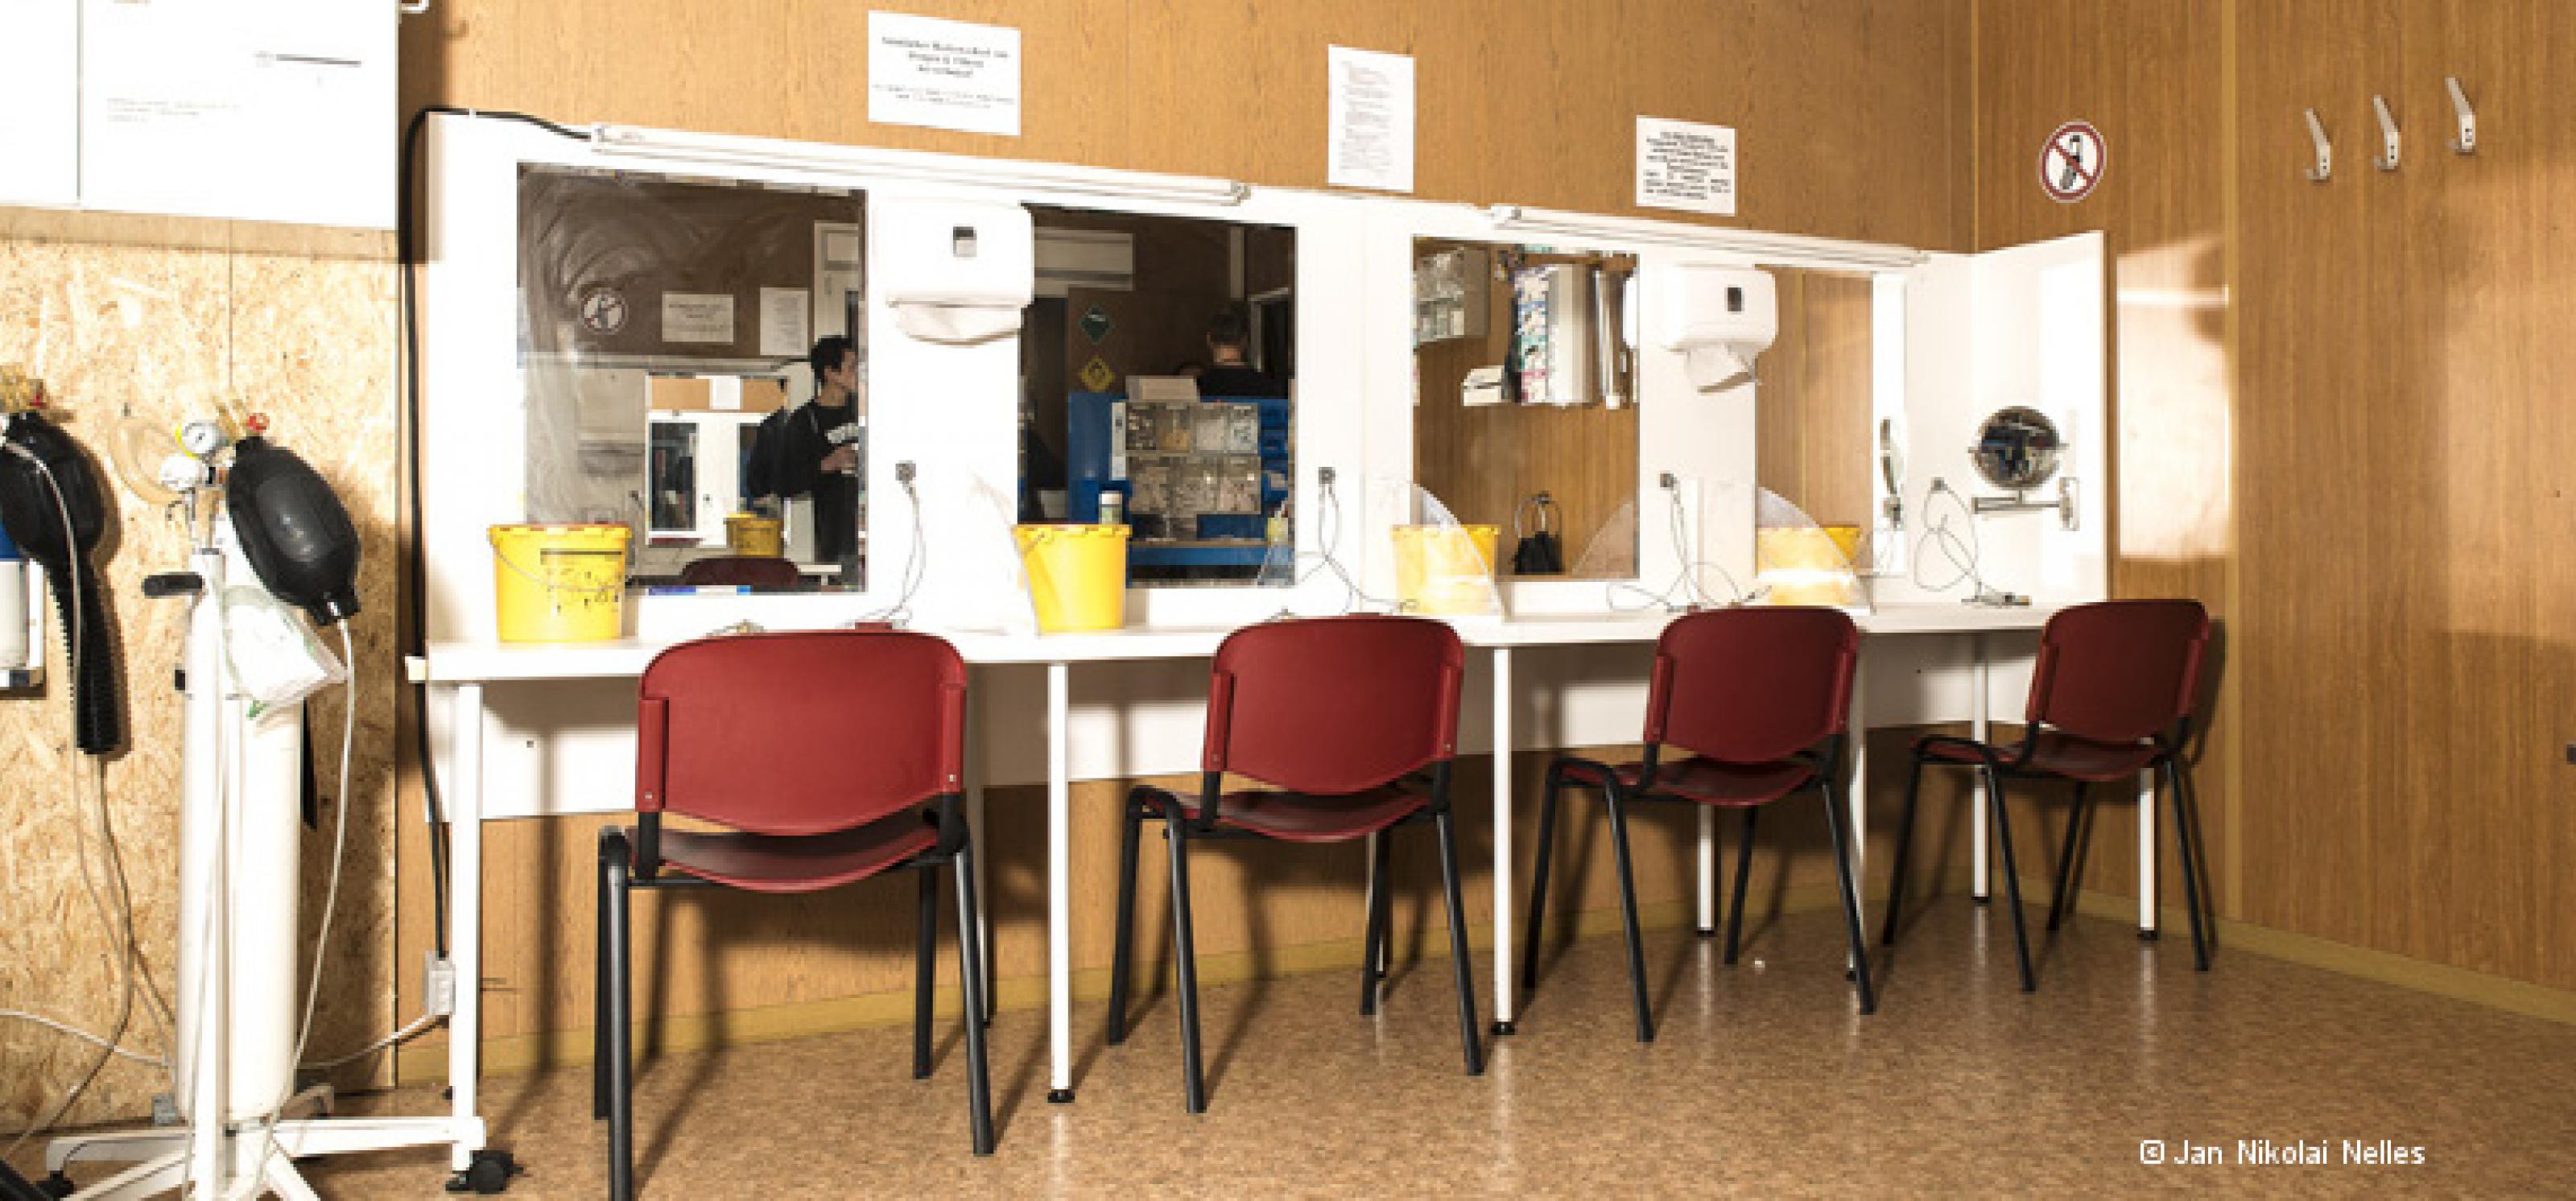 Drogenkonsumraum: Entlang einer Wand stehen vier Stühle vor Tischen und Spiegeln, an denen Drogen gespritzt werden können. An der Seite stehen zwei Beatmungsgeräte.